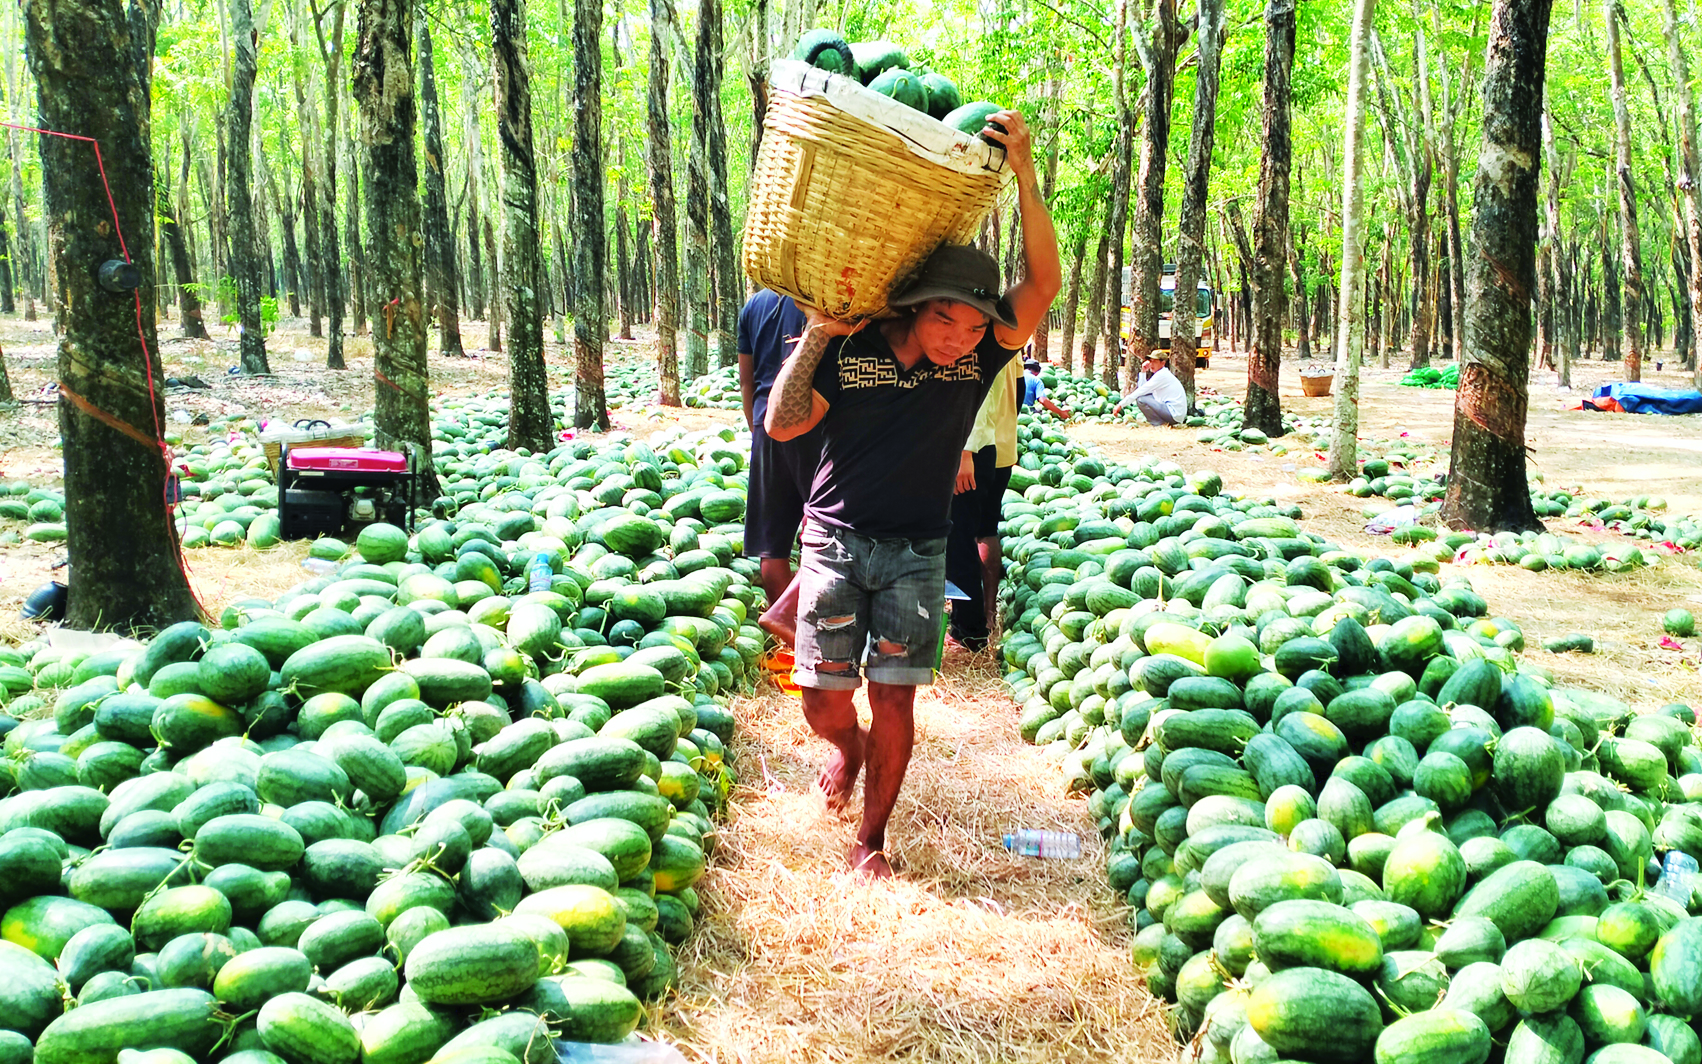 Trong khu rừng ở Tây Ninh, cắt trái ngon bày la liệt hàng tấn, giá bán rẻ mạt, lịm dần, có loại bán 1.000 đồng/kg